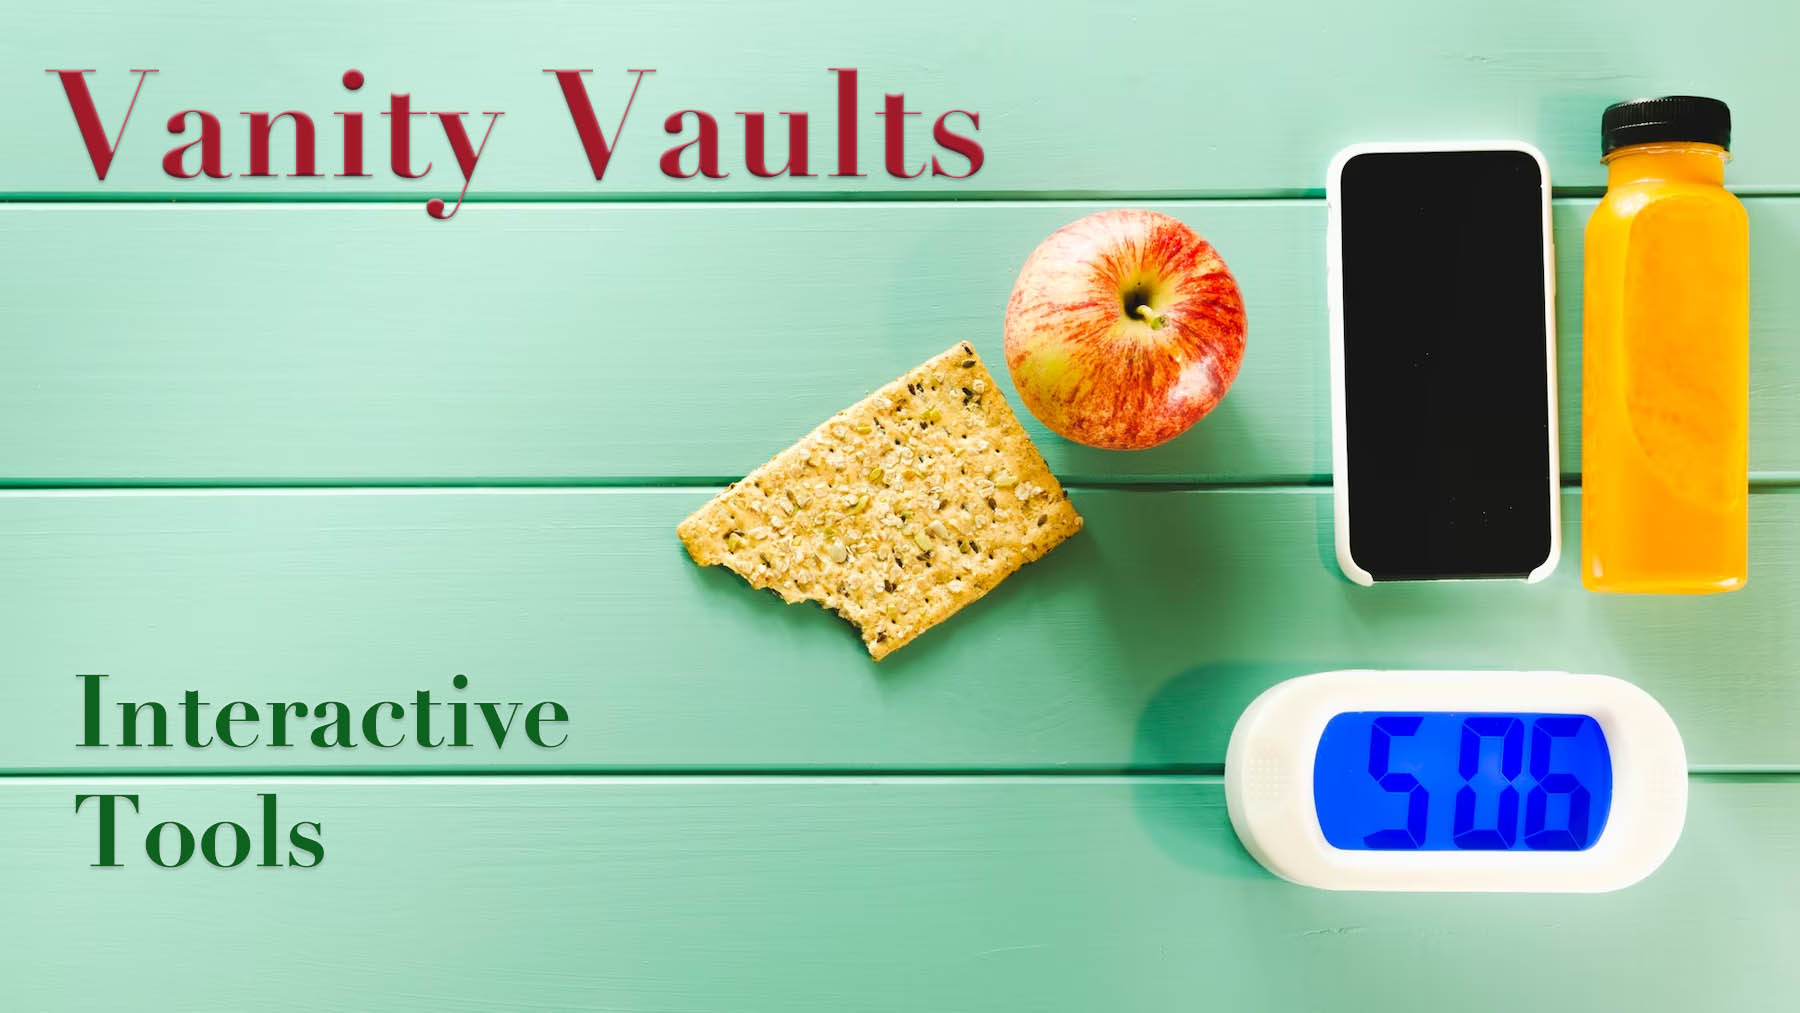 Vanity Vaults Interactive Tools